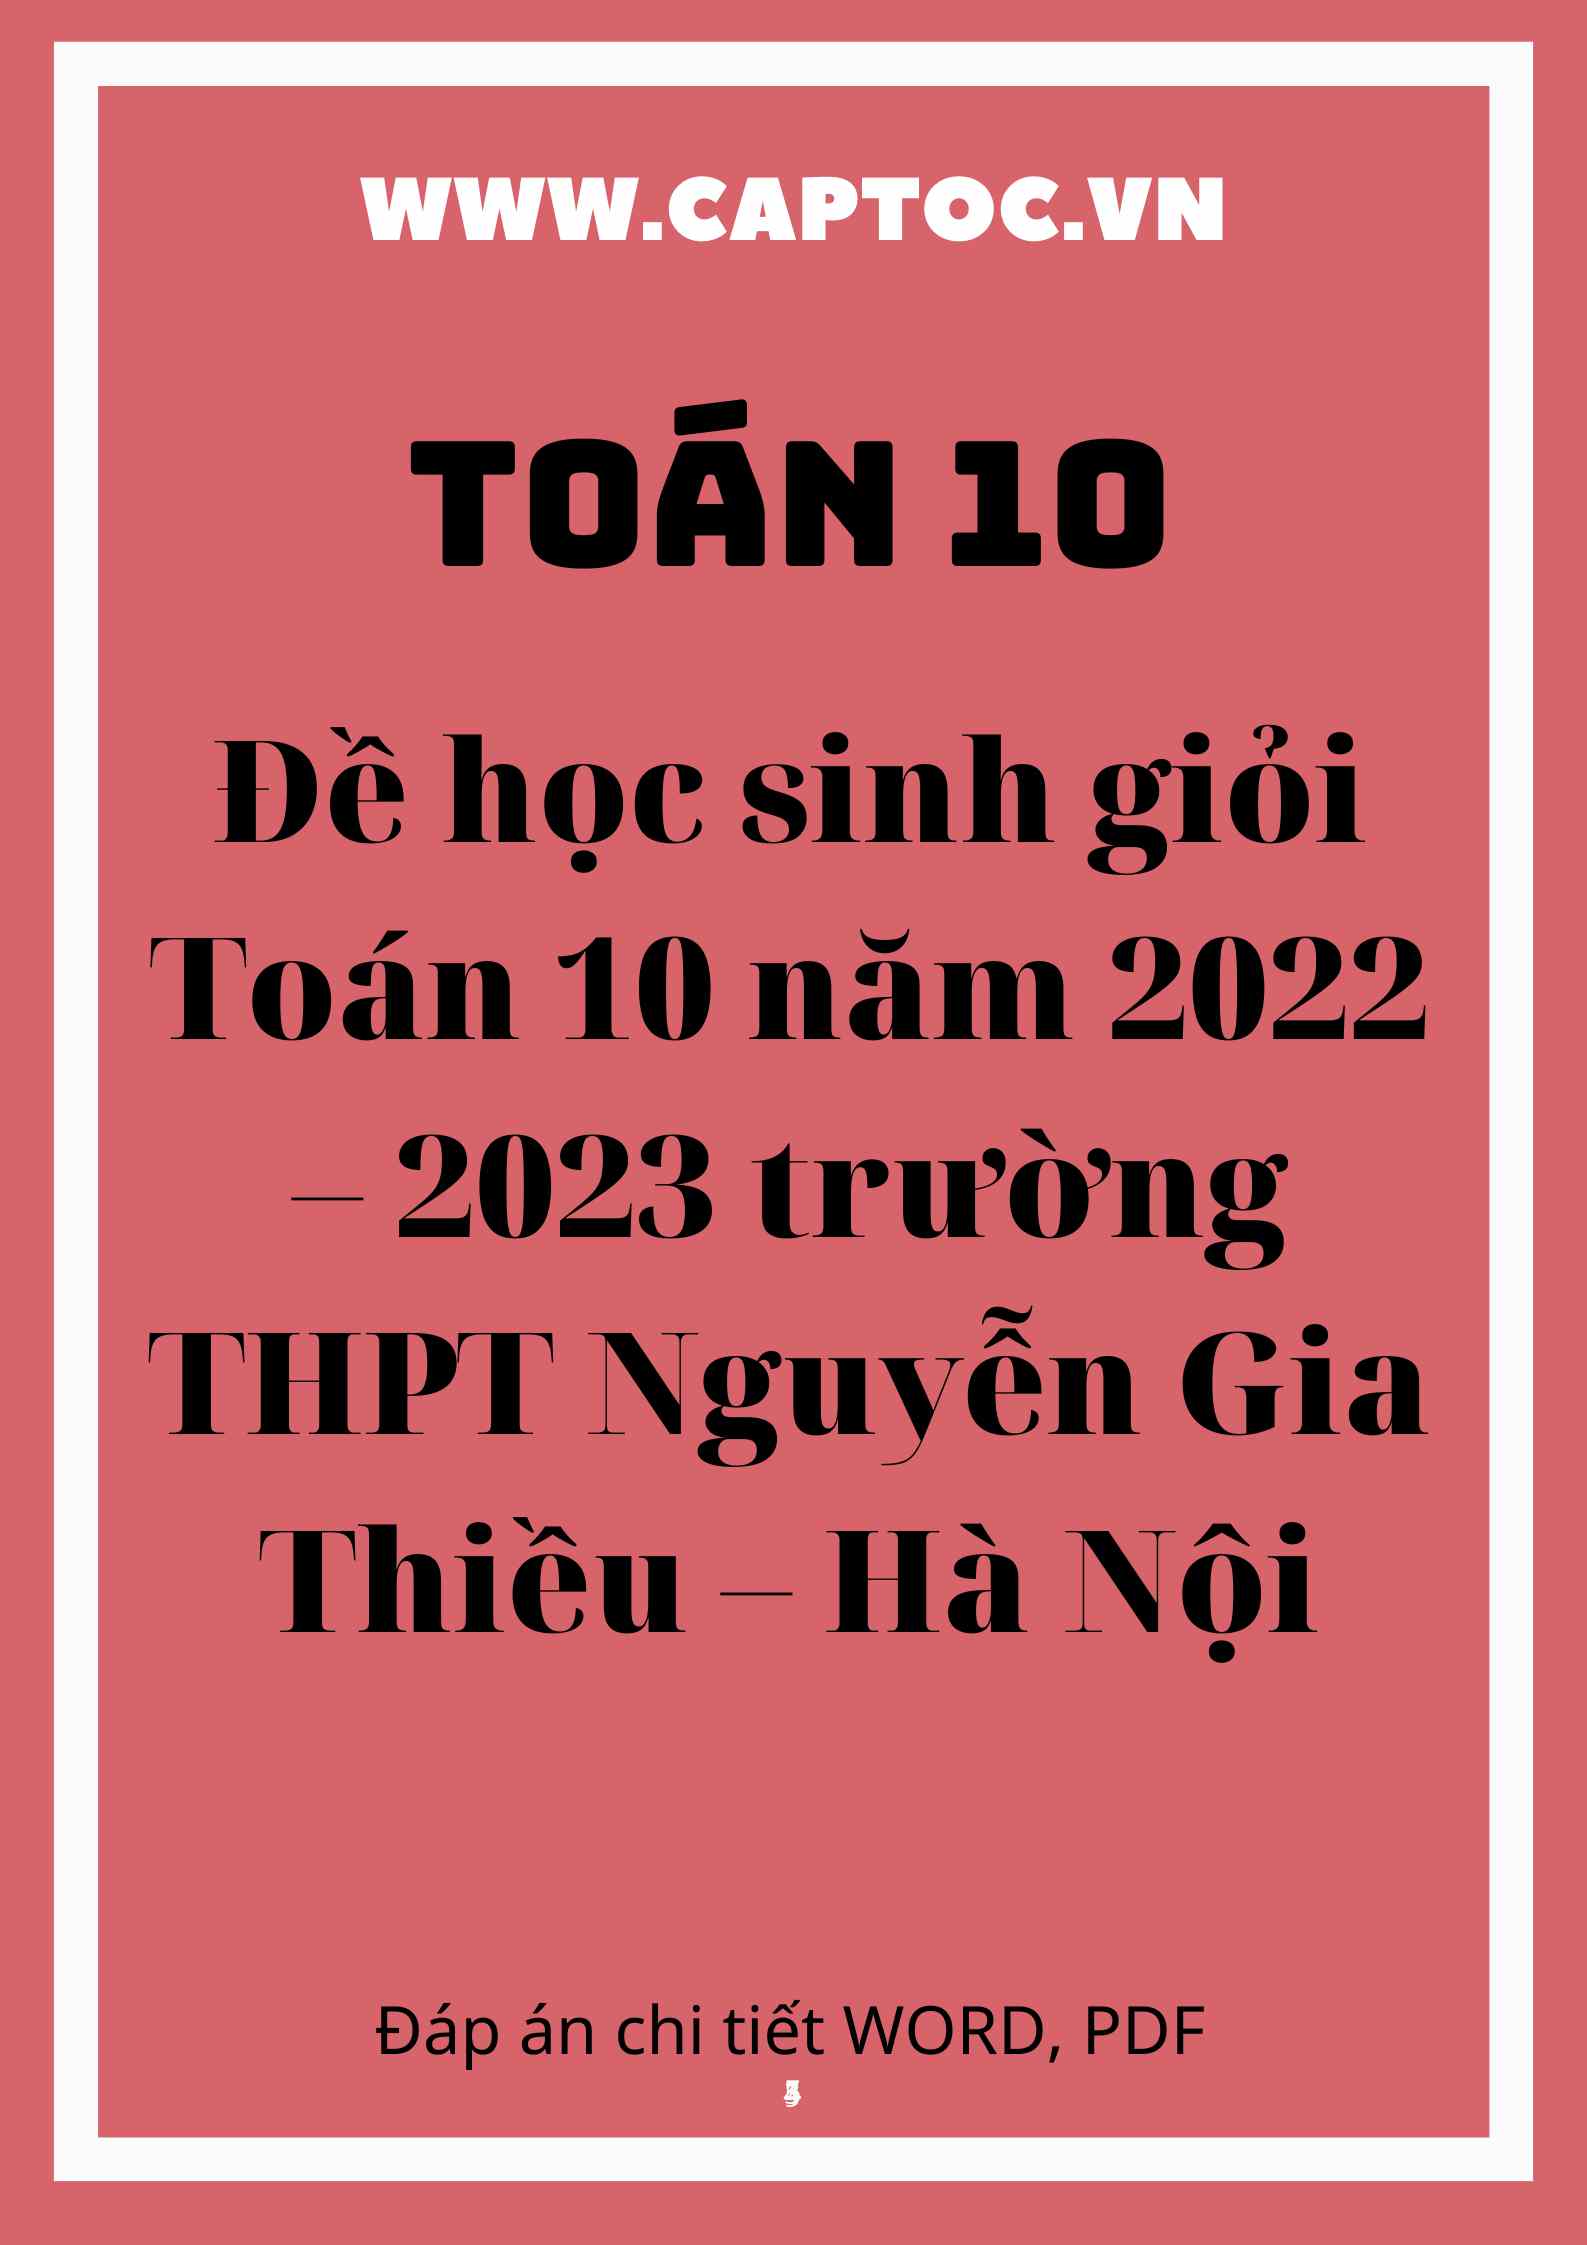 Đề học sinh giỏi Toán 10 năm 2022 – 2023 trường THPT Nguyễn Gia Thiều – Hà Nội